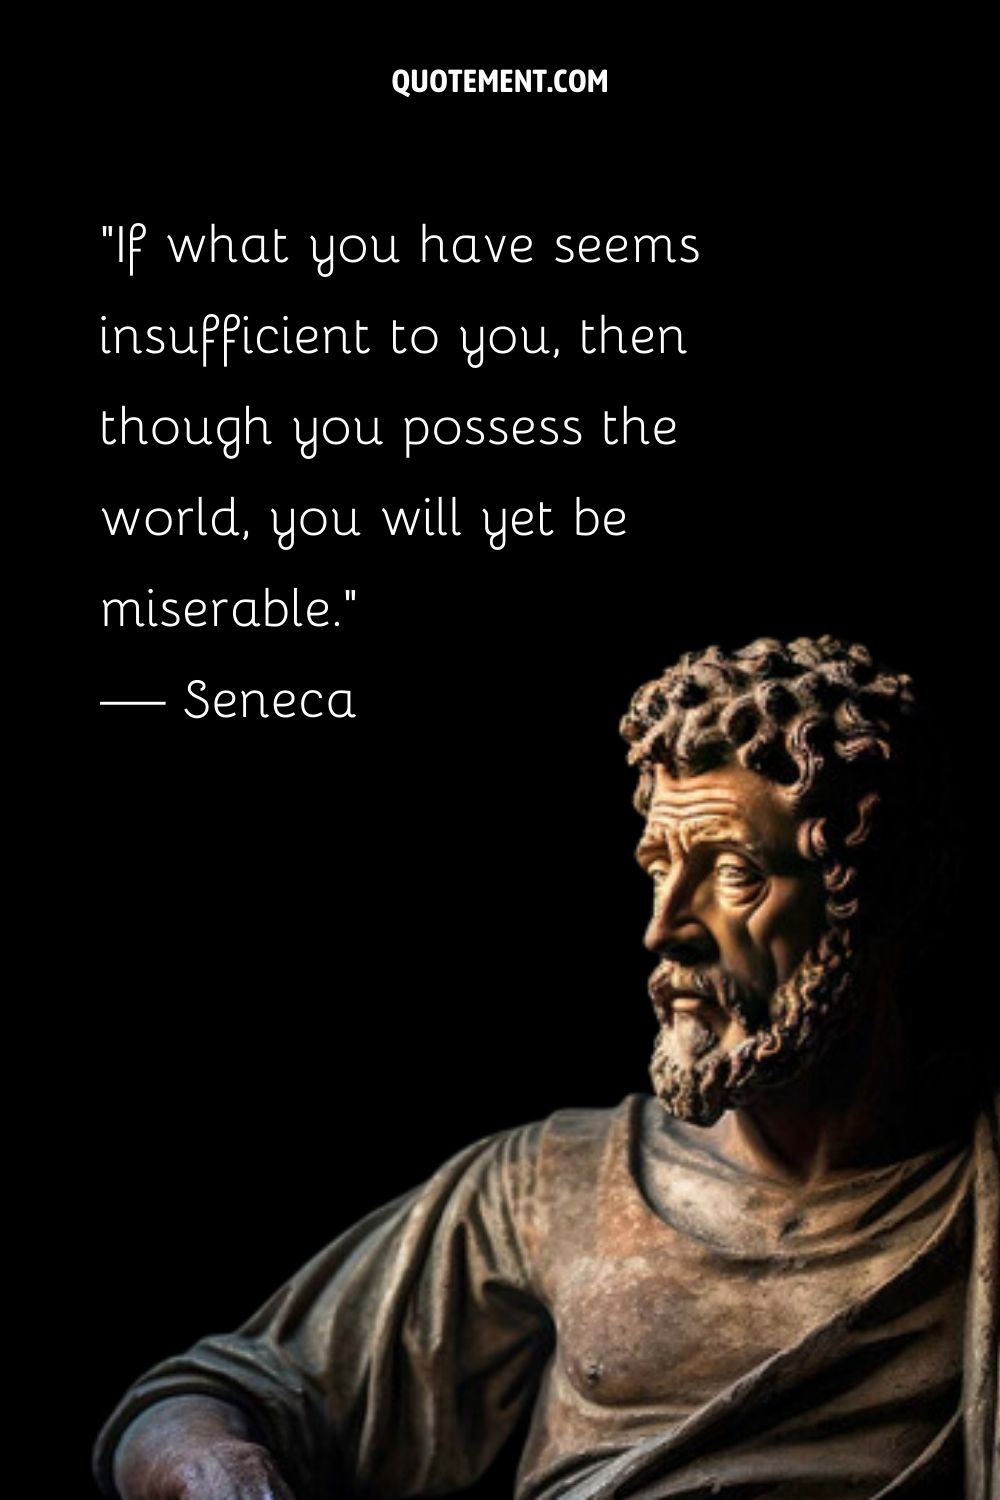 Carved figure embodies Seneca's teachings.